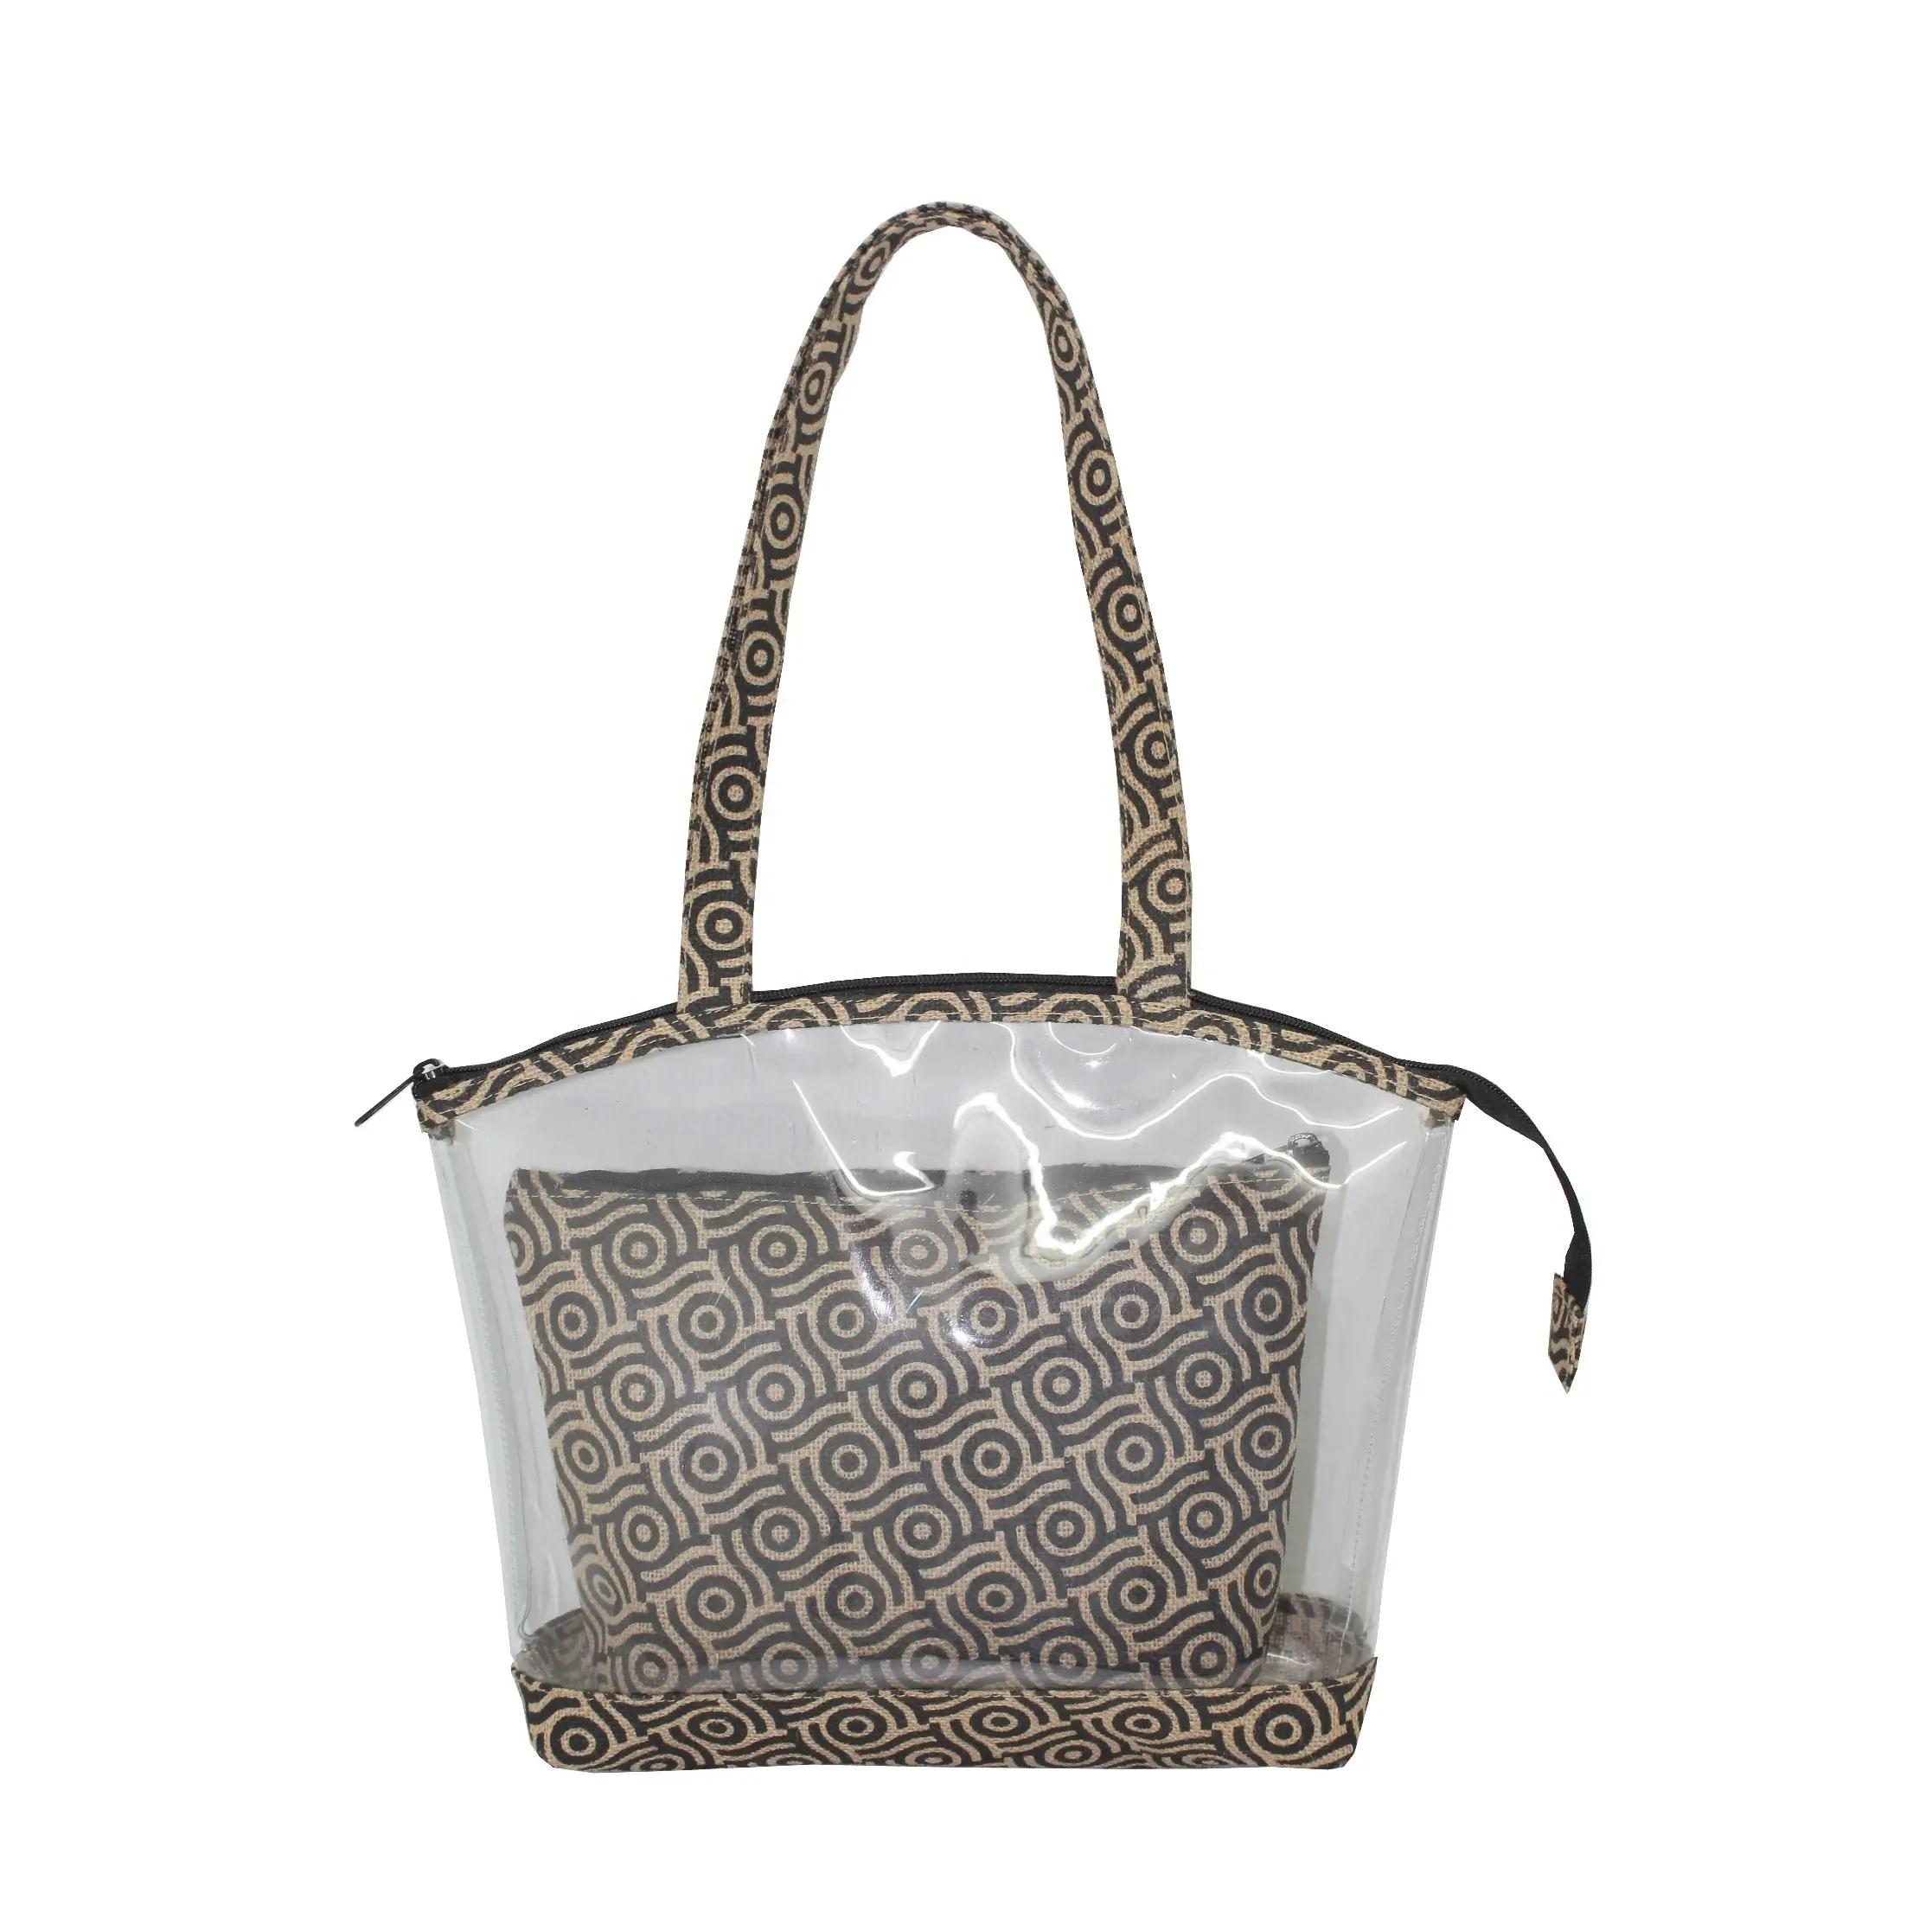 시스루 비치 토트 핸드백 하이 퀄리티 황마와 0.08 MM 두꺼운 PVC 시트의 조합에서 만든 패션 화장품 가방